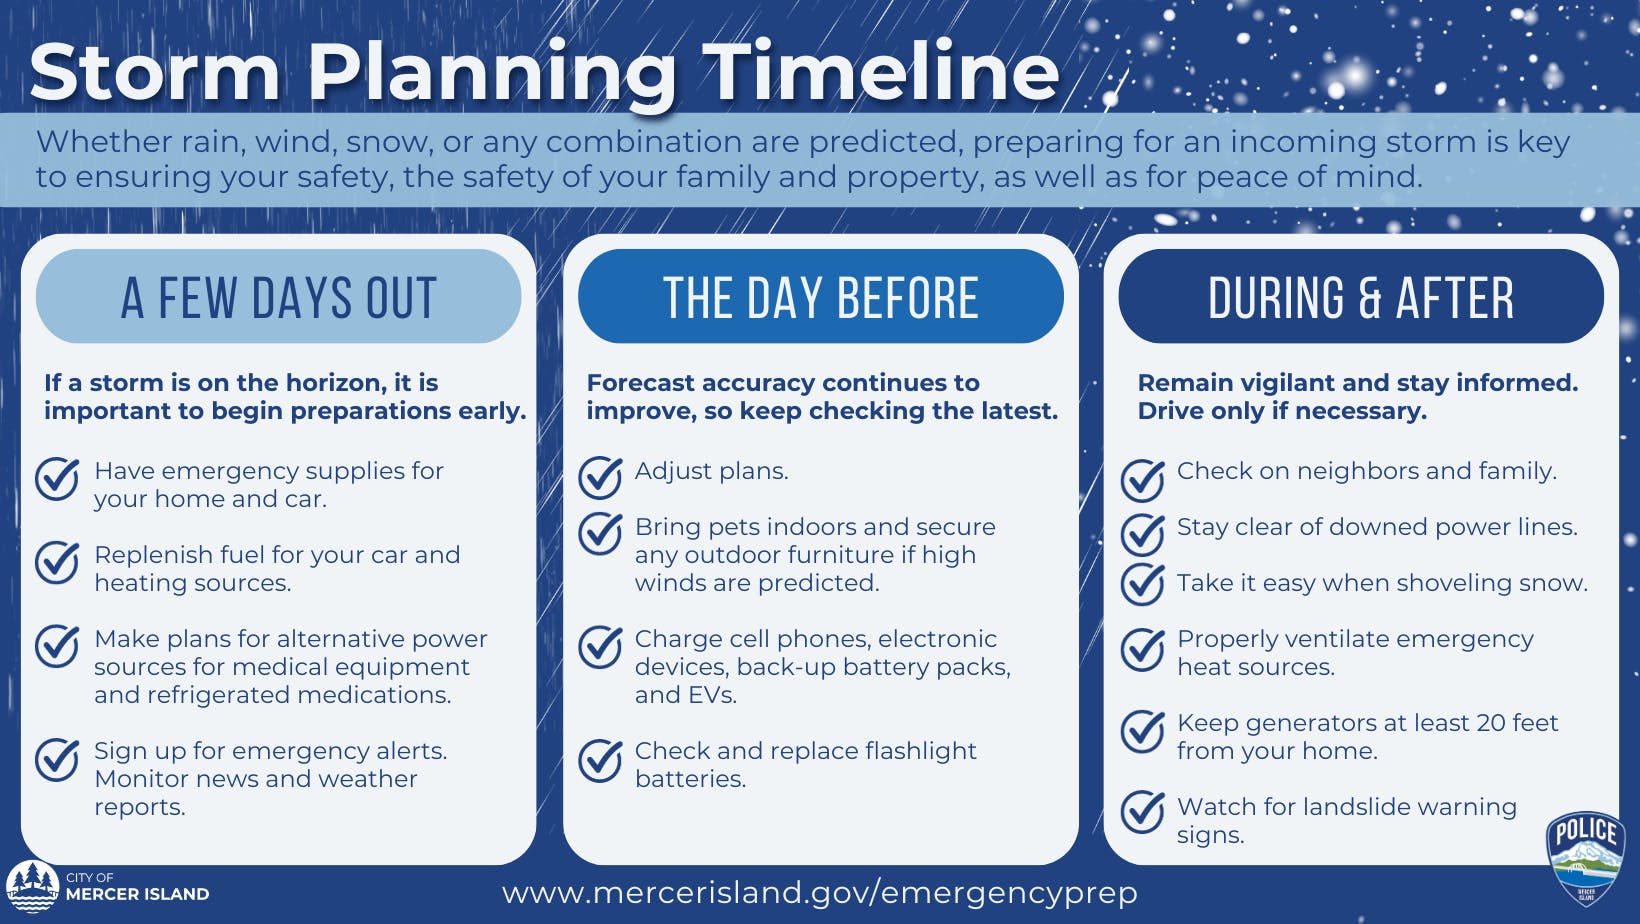 Storm Planning Timeline.png